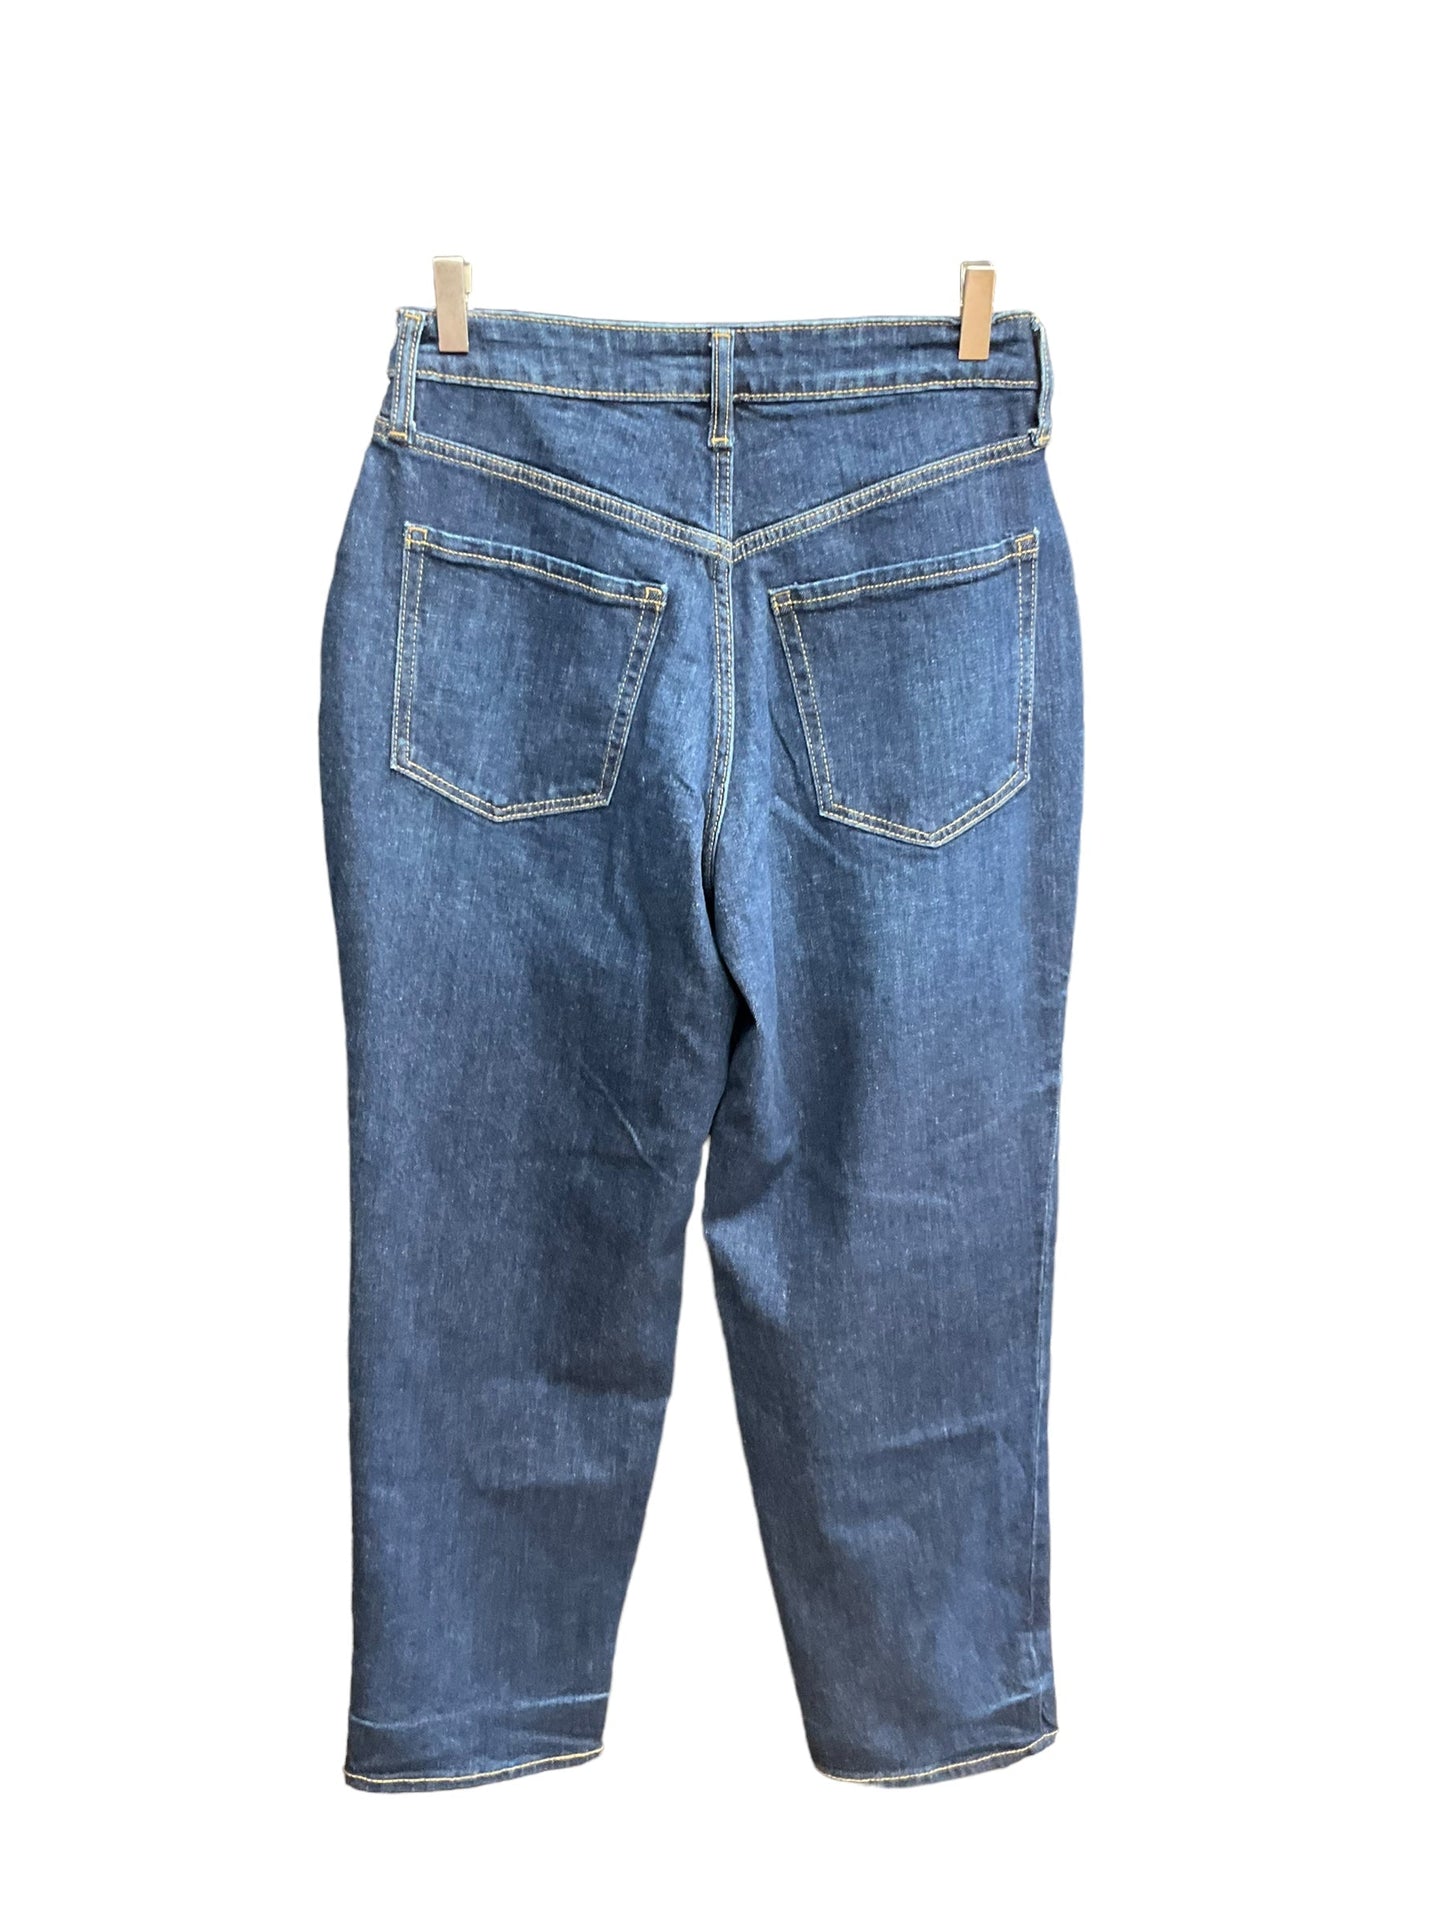 Blue Denim Jeans Boyfriend Old Navy, Size 6